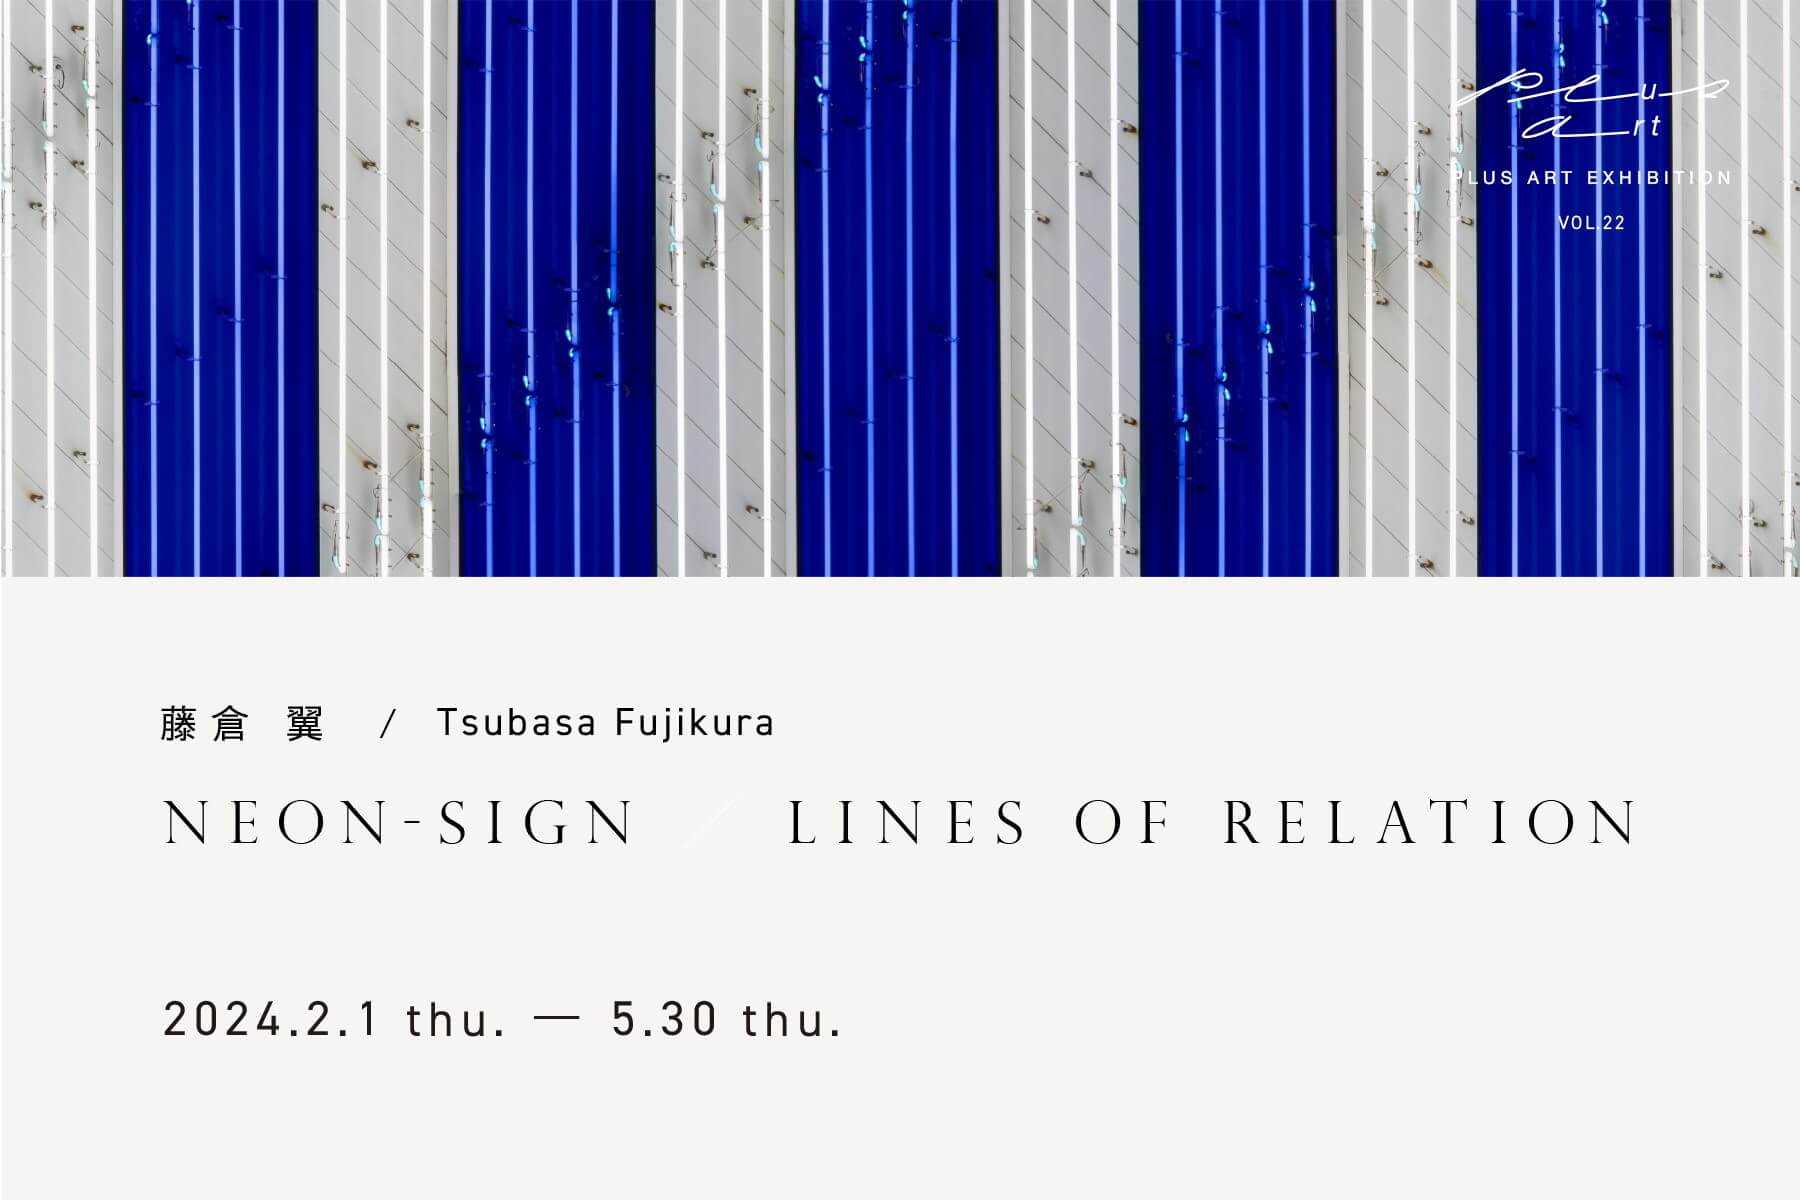 PLUS ART EXHIBITION vol.22　藤倉 翼　/　Tsubasa Fujikura <br>『NEON-SIGN / LINES OF RELATION』　